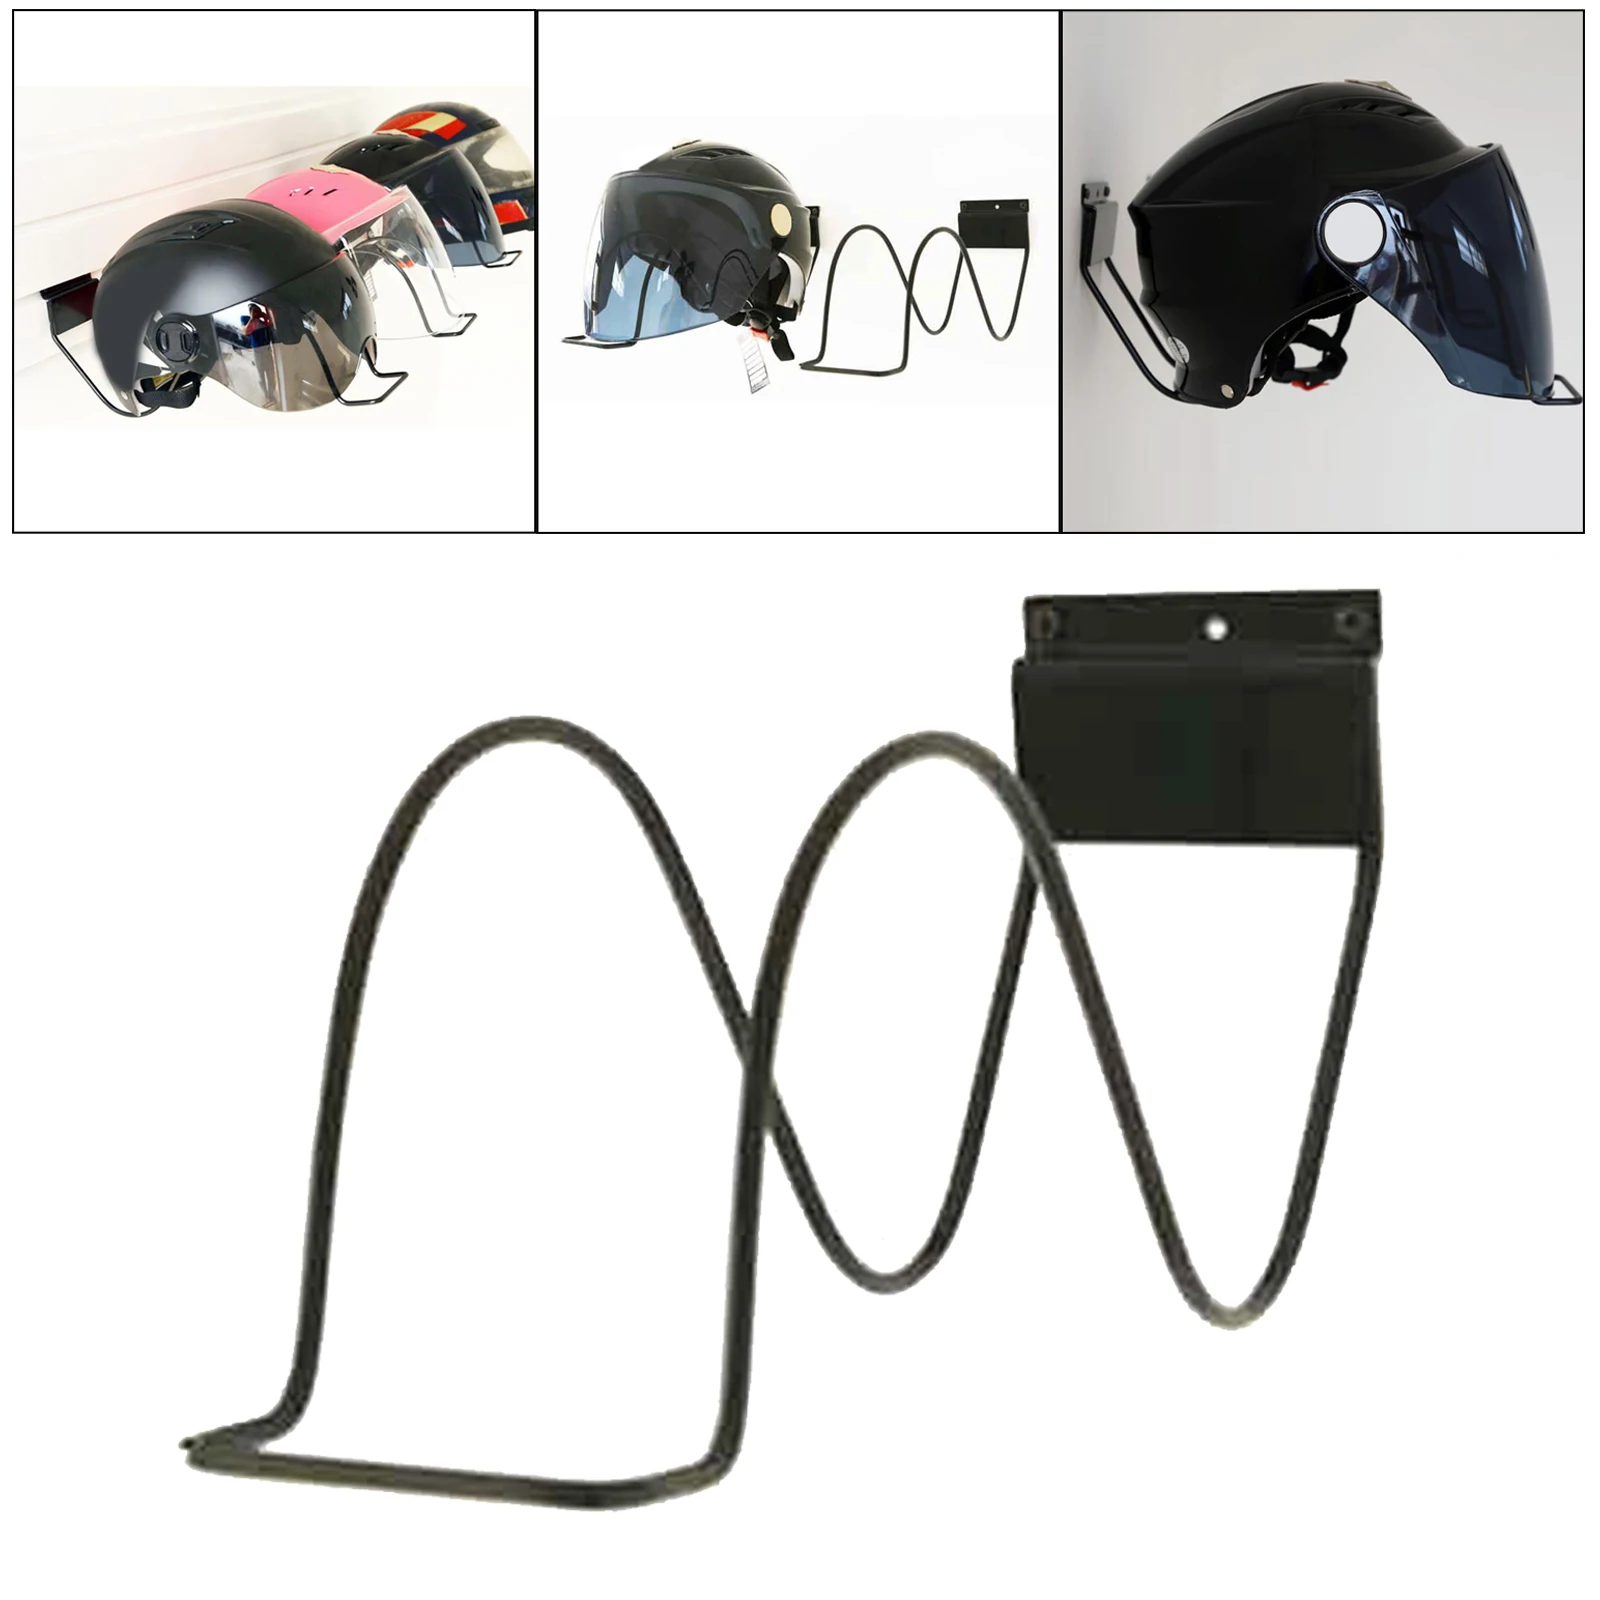 Metal Helmet Display Rack, Wall Mount Hanger for Motorcycle Bike Helmet Holder Shelf Rack Storage Bracket Racks